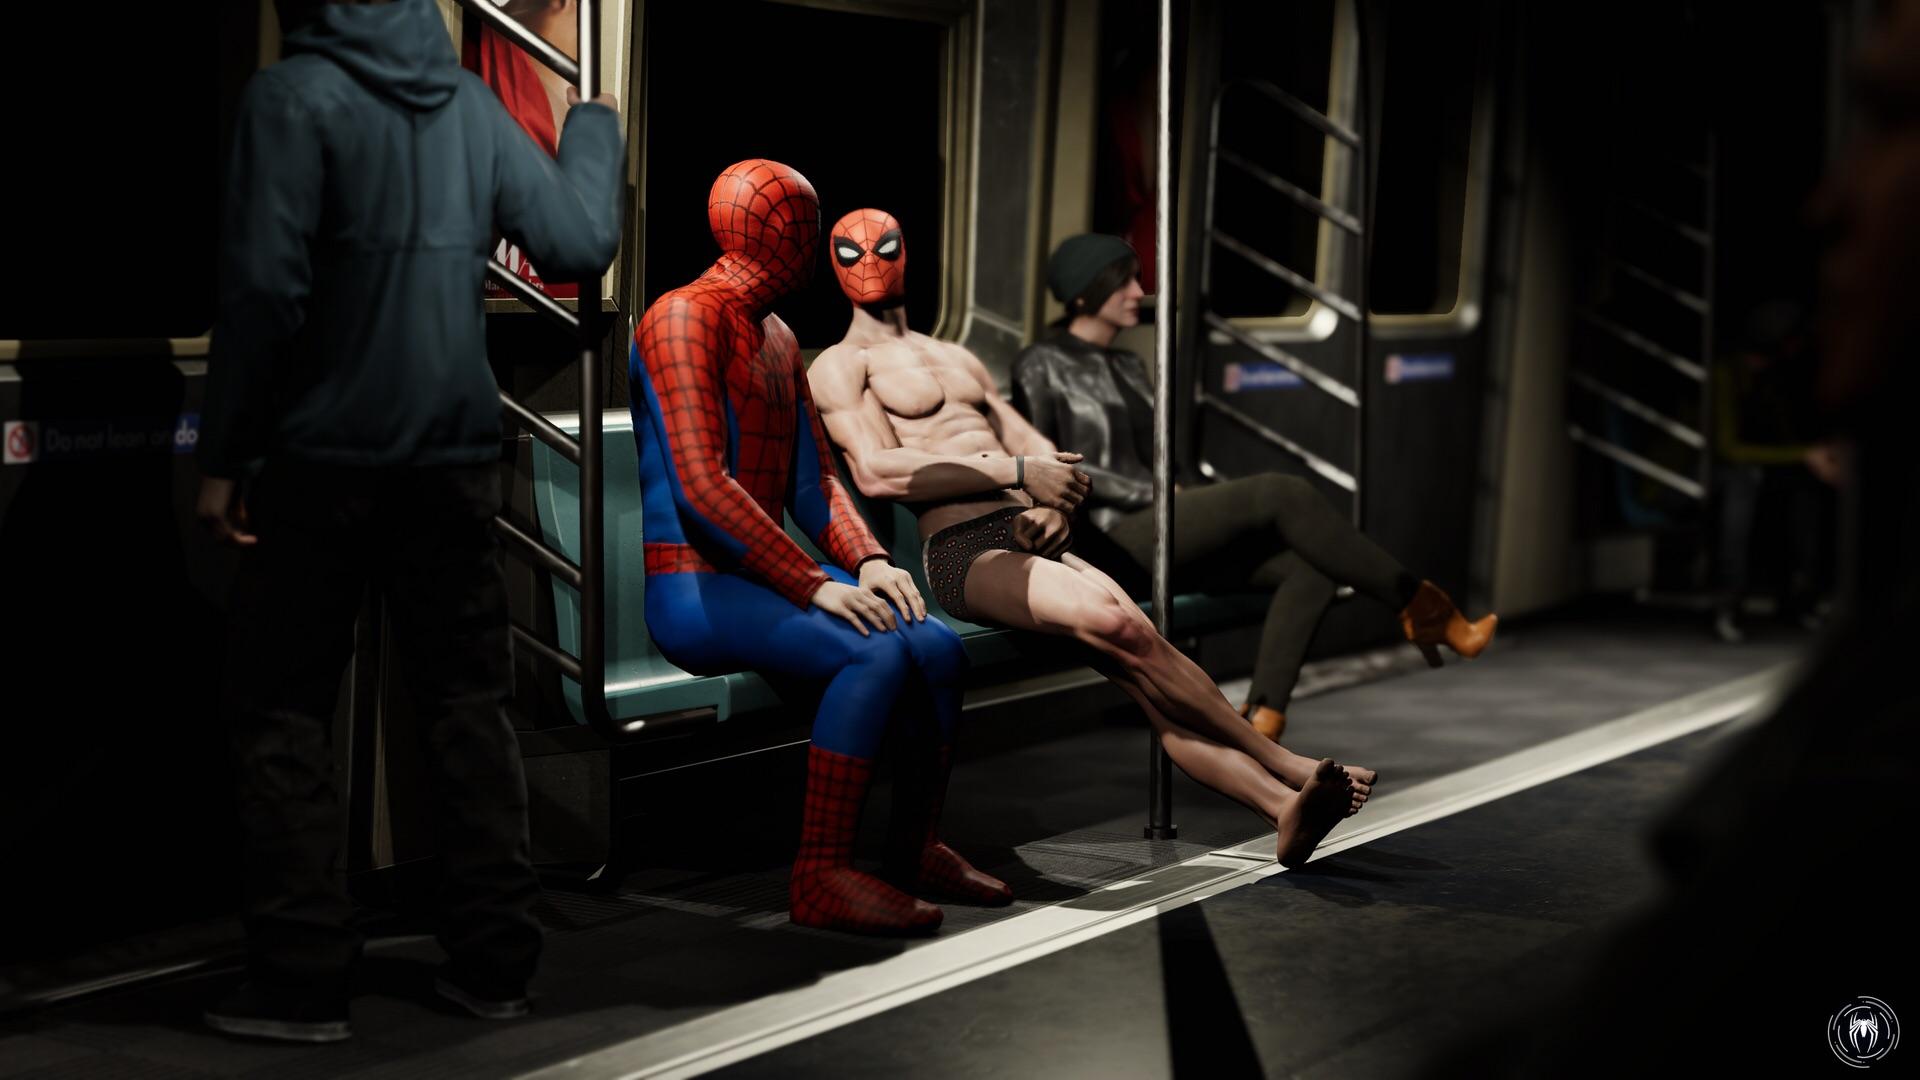 Галерея: как геймеры развлекаются в Marvel's Spider-Man PLAYER ONE кар...